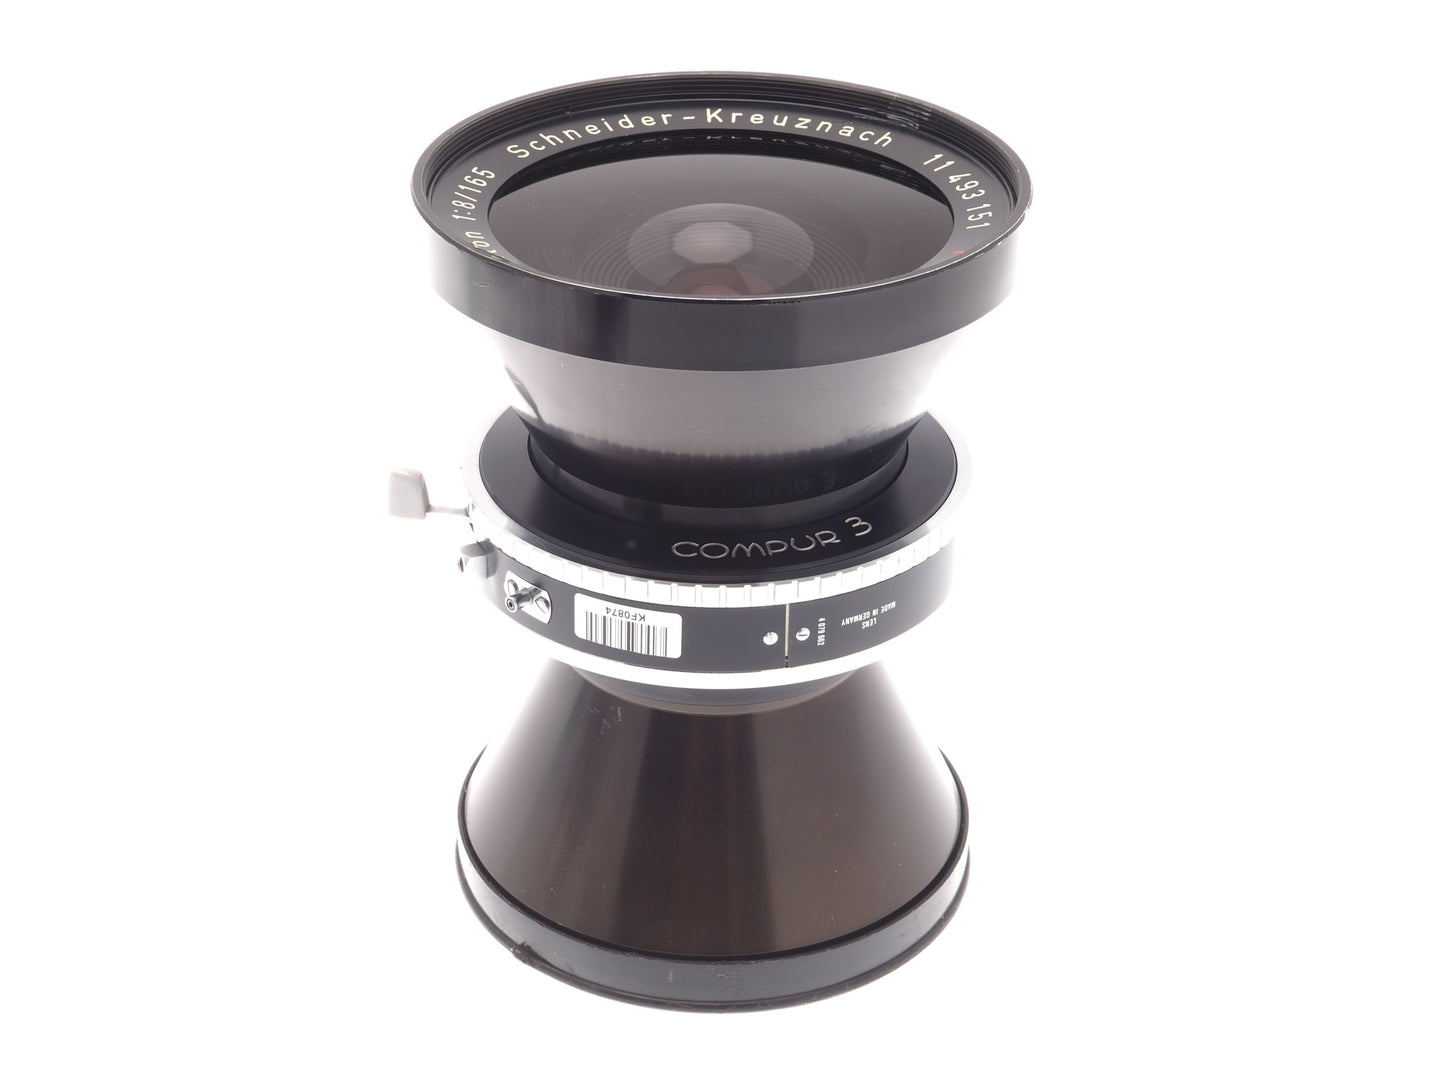 Schneider-Kreuznach 165mm f8 Super-Angulon (Shutter) - Lens